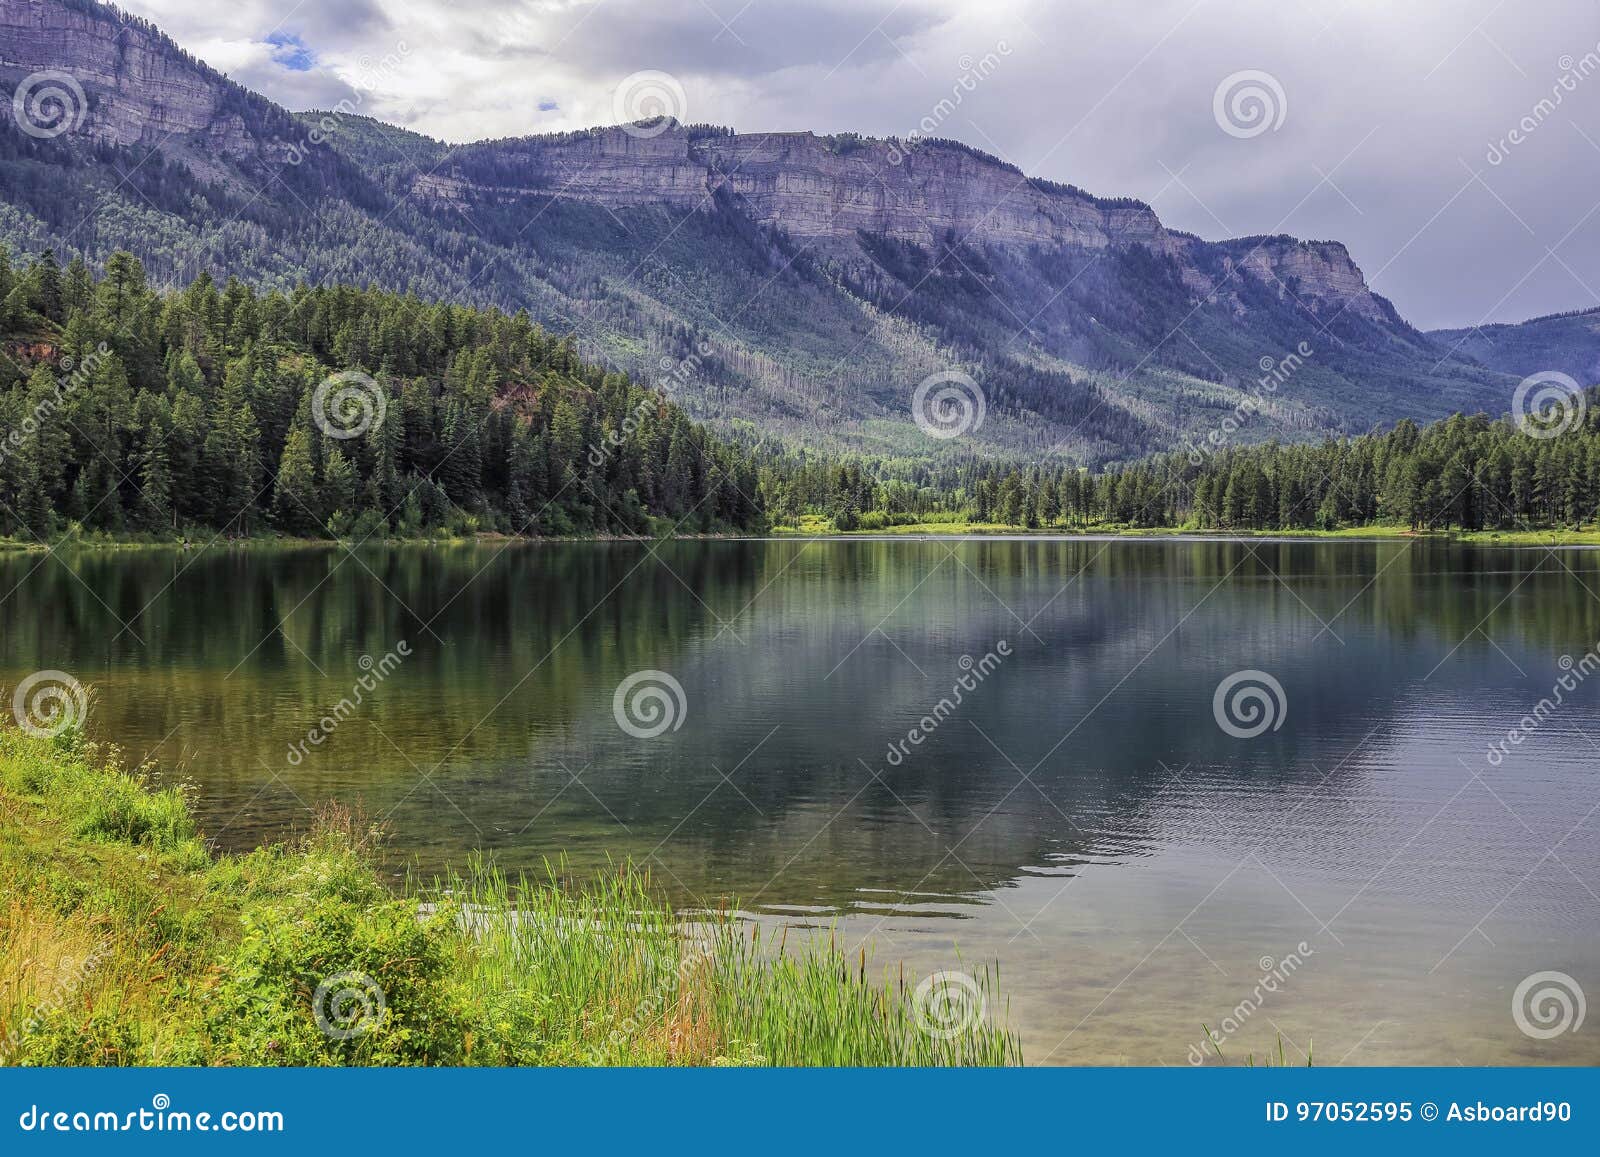 haviland-lake-colorado-reflection-mountain-located-san-juan-mountains-near-durango-97052595.jpg